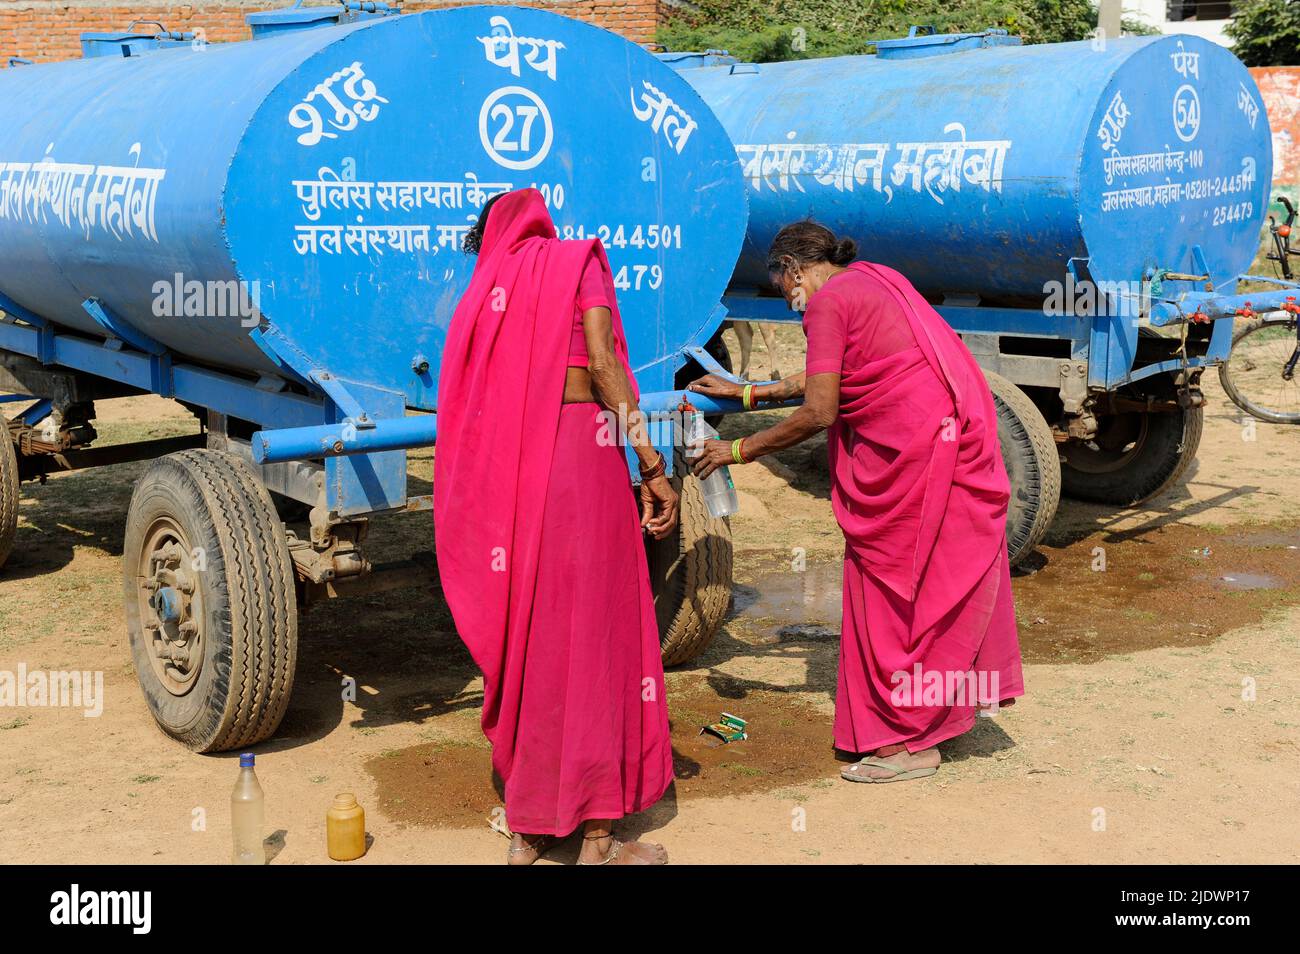 INDE, Uttar Pradesh, Bundelkhand, Mahoba, pénurie d'eau, Femmes en saree rose au réservoir d'eau bleu remplissant la bouteille en plastique avec de l'eau potable, lors d'un rassemblement de femmes mouvement Gulabi Gang Banque D'Images